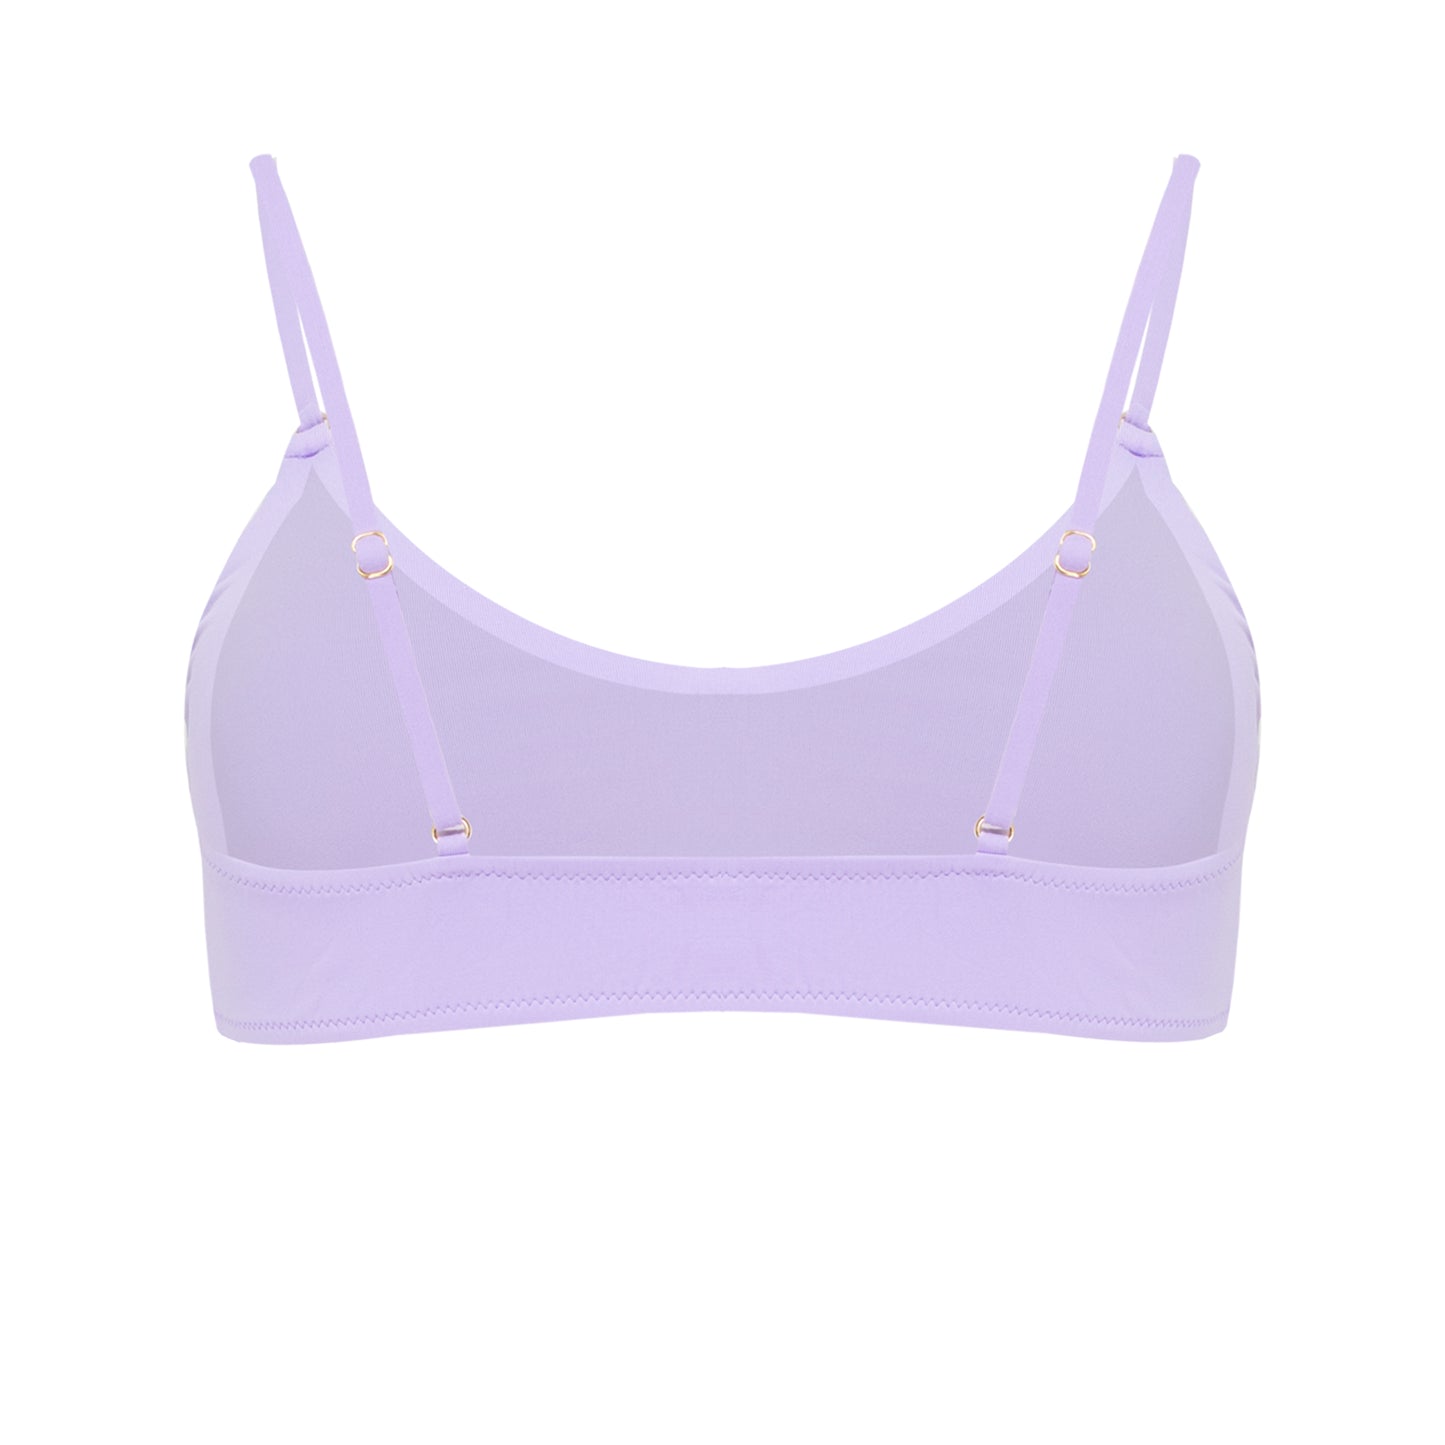 Vienna Lilac Bikini Top